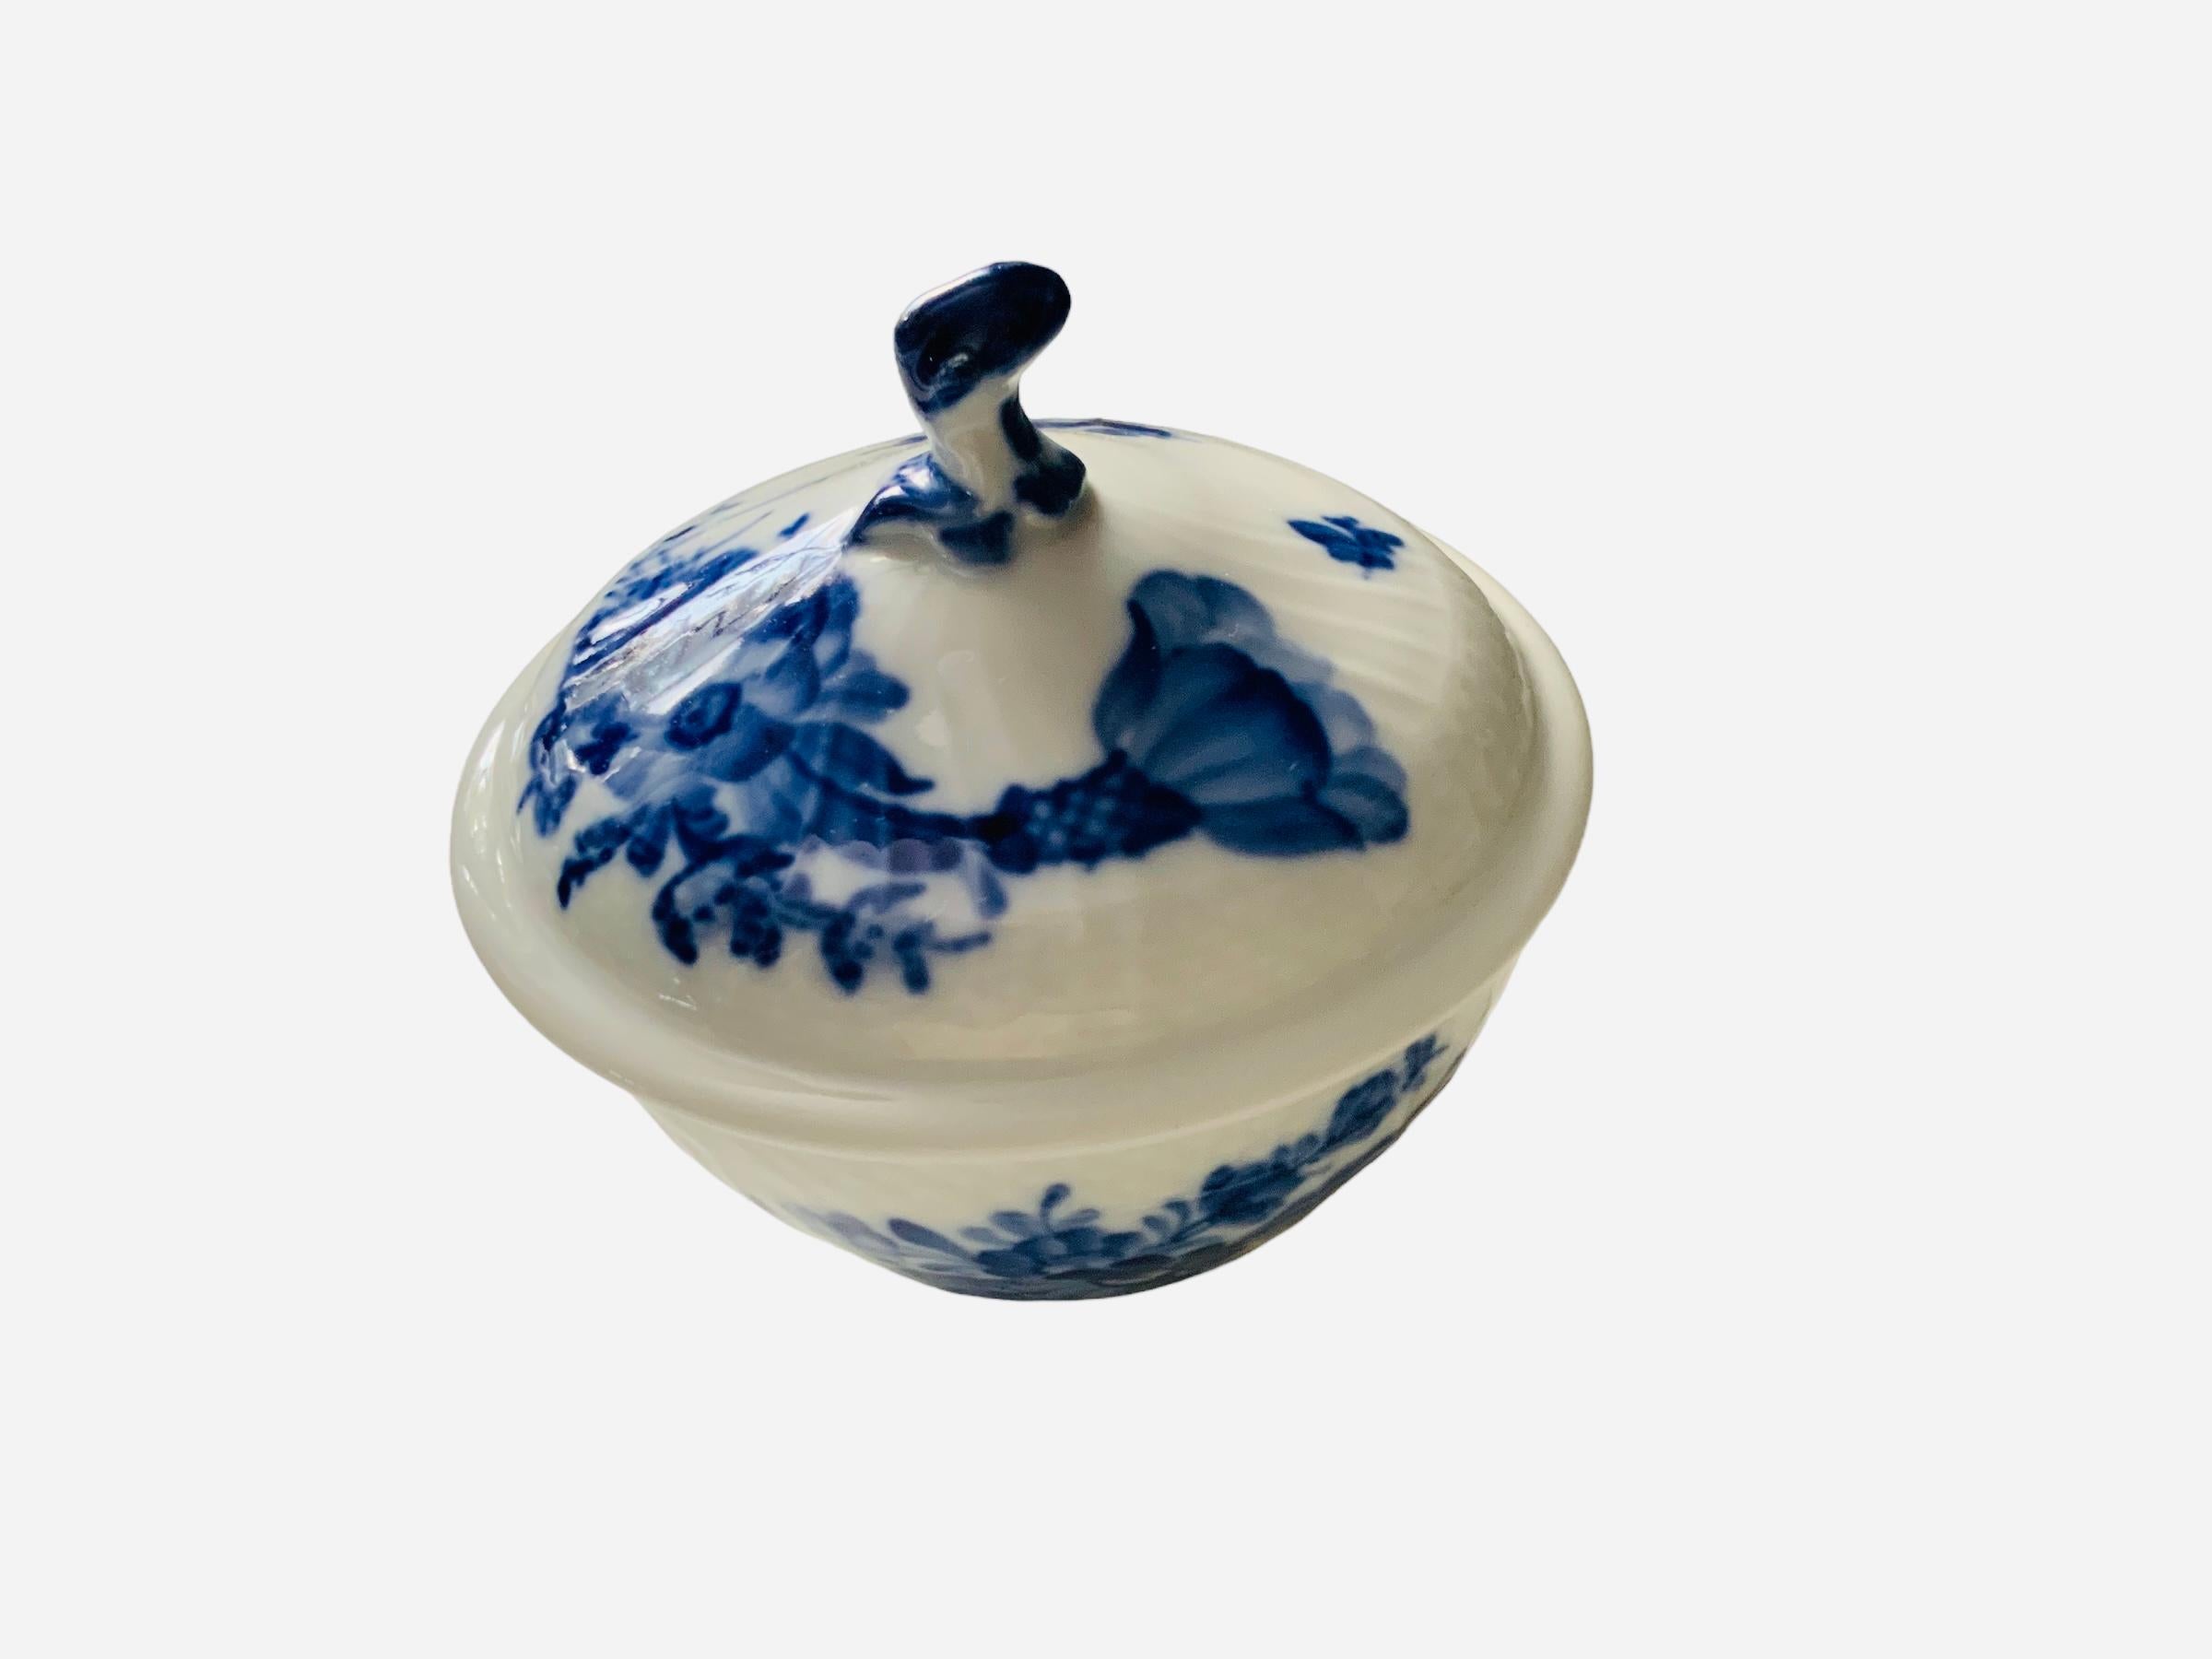 Hand-Painted Royal Copenhagen Porcelain Sugar Bowl For Sale